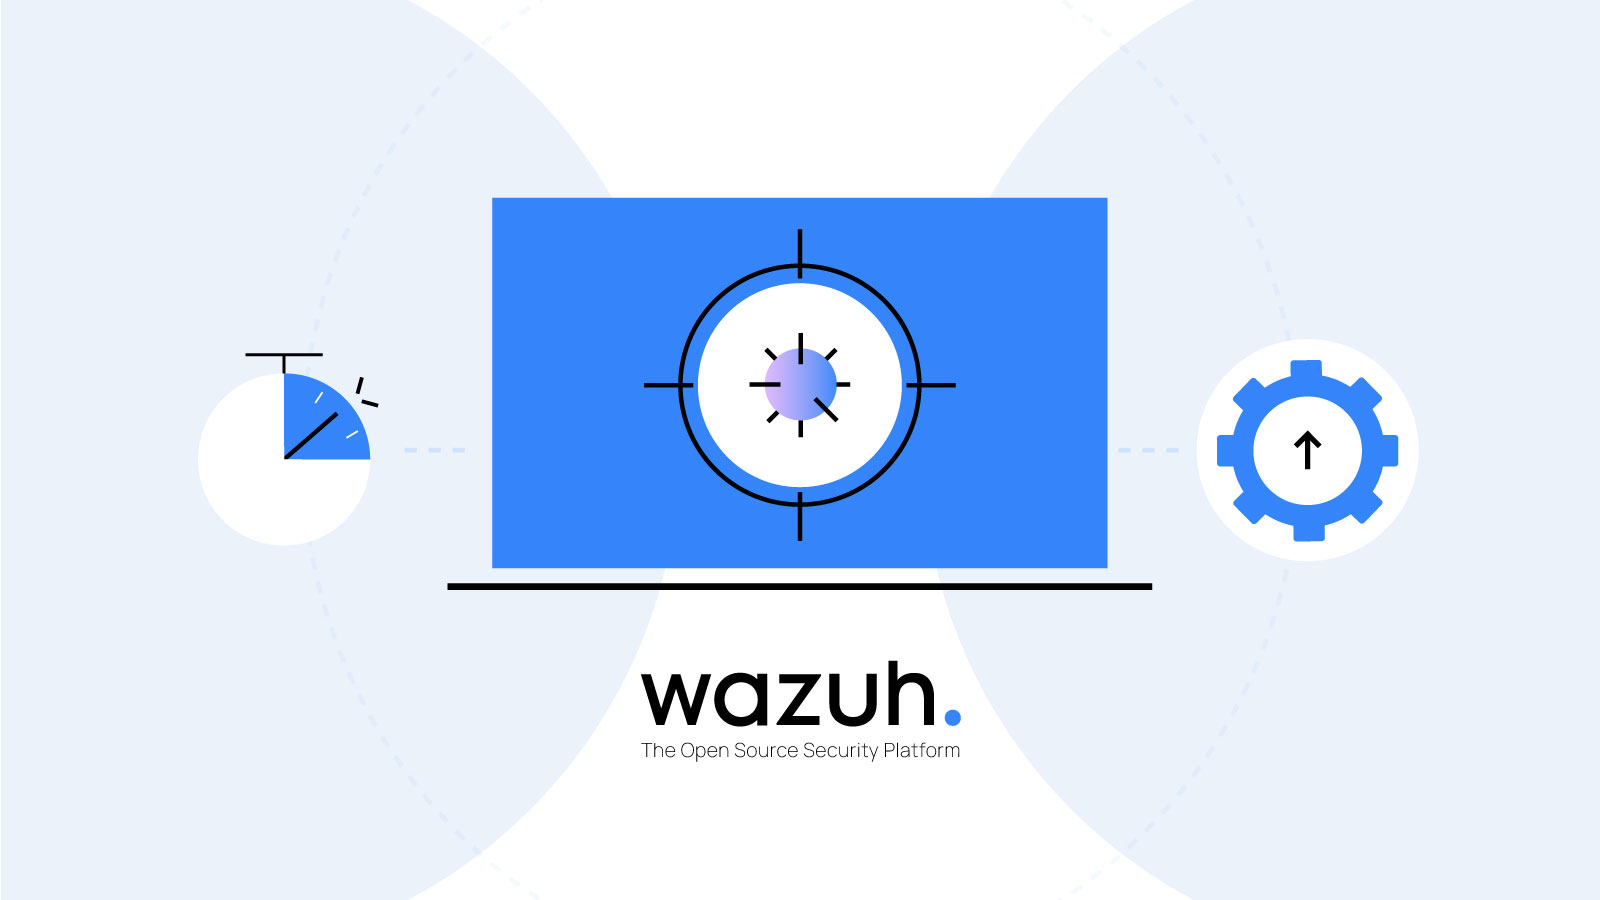 Wazuh logo